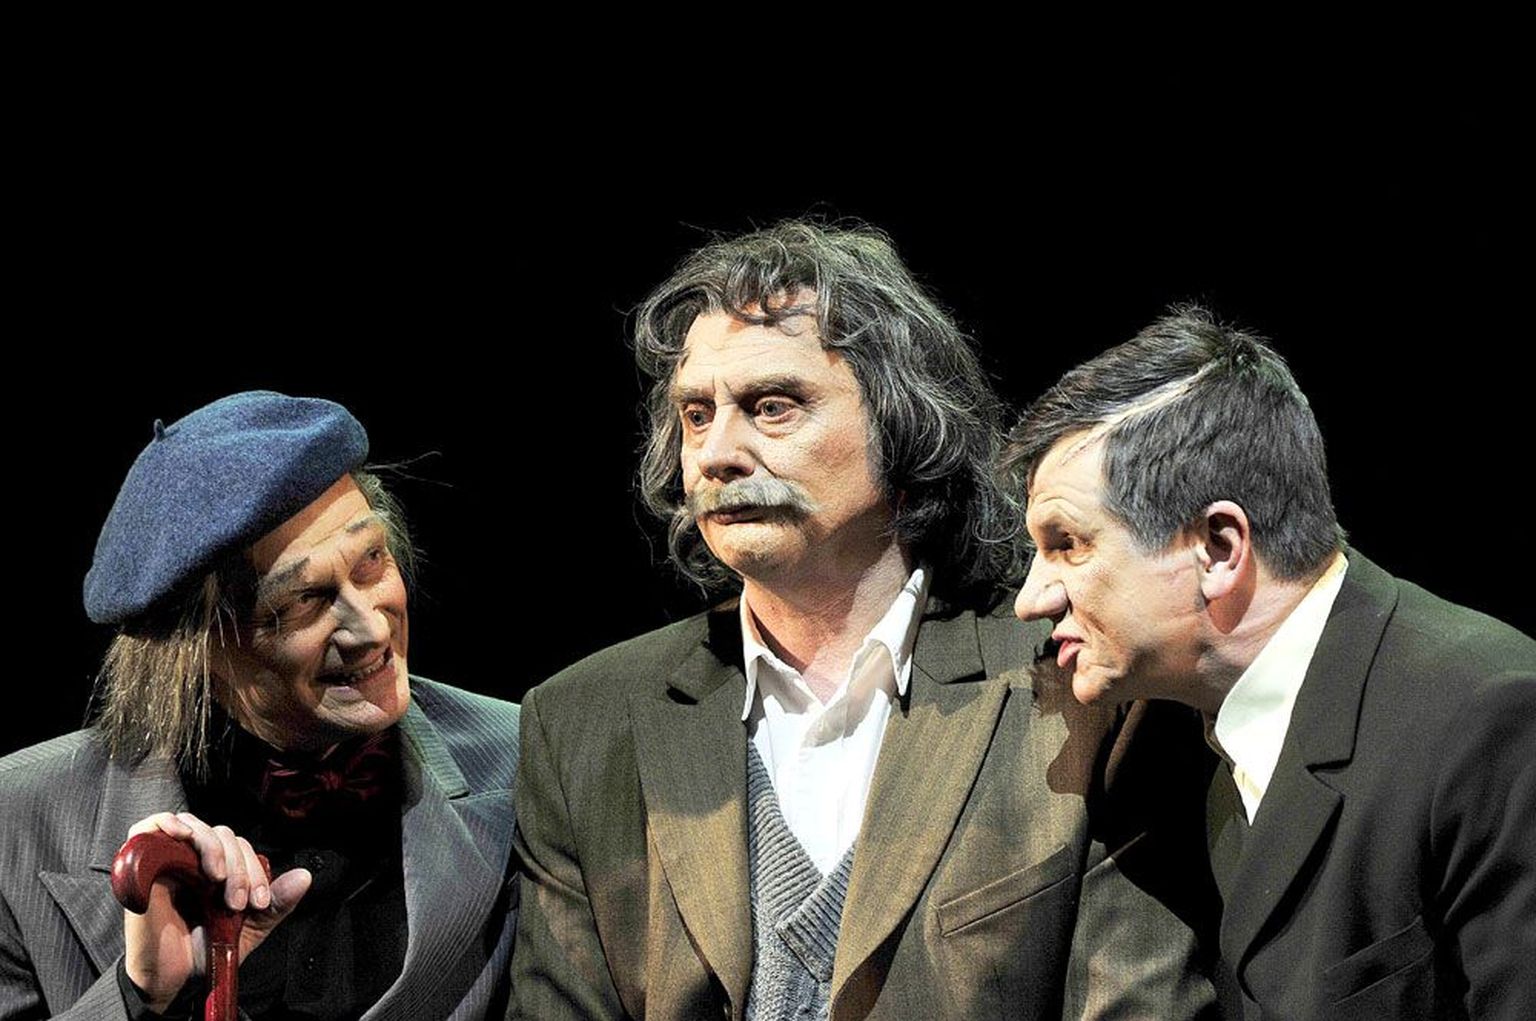 Täna esietendub Vanemuise väikeses majas kerge draama «Paplid tuules», milles mängivad Jüri Lumiste (vasakult), Aivar Tommingas ja Hannes Kaljujärv.